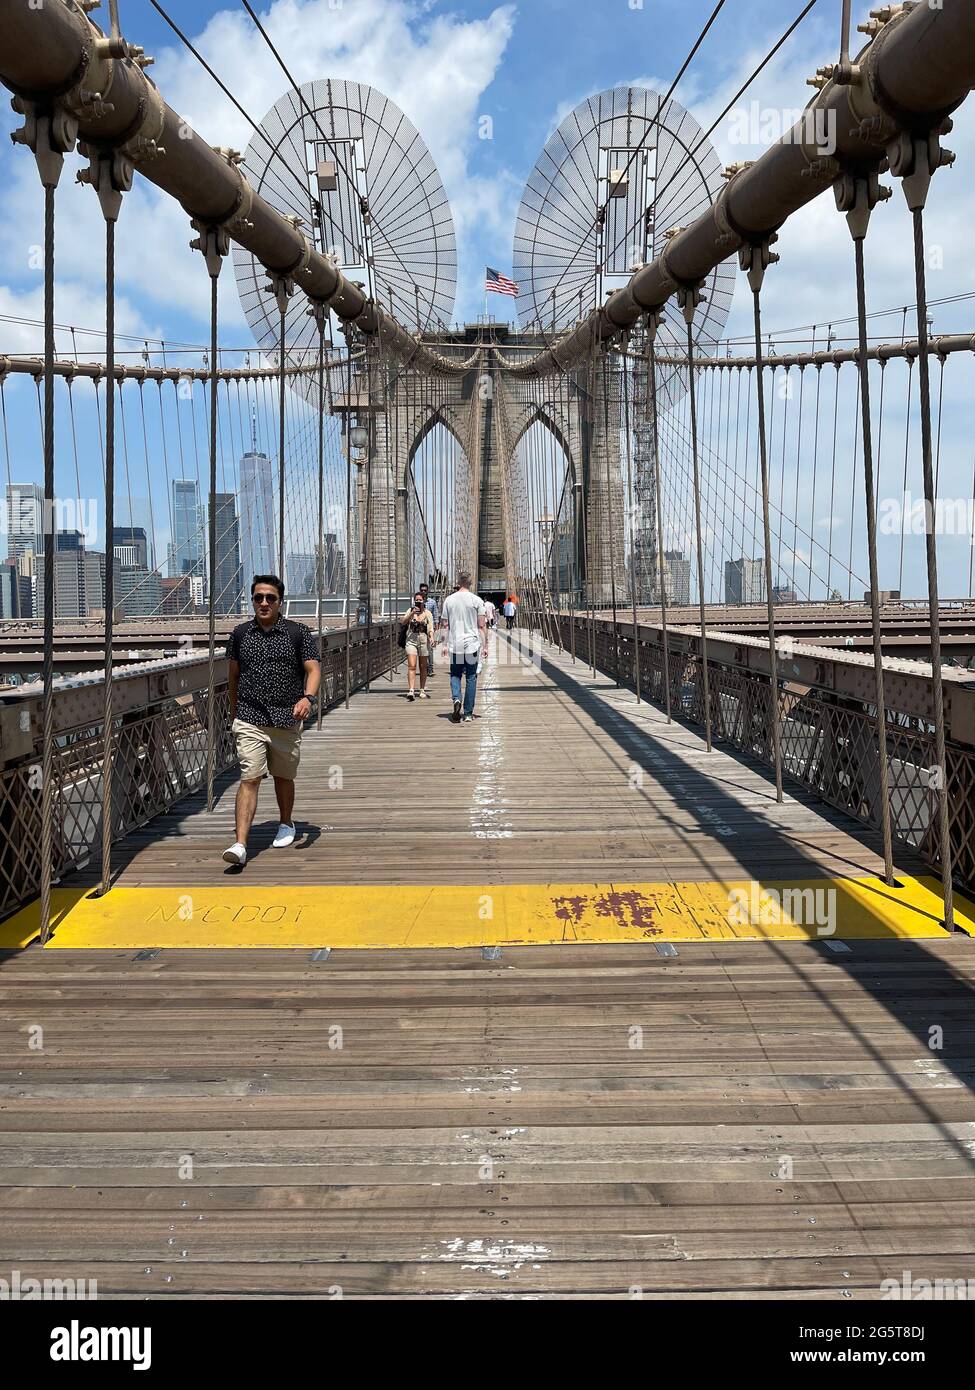 El paseo cruzando el Puente de Brooklyn en Nueva York tiene carriles separados para el peatón senderistas y ciclistas. Foto de stock